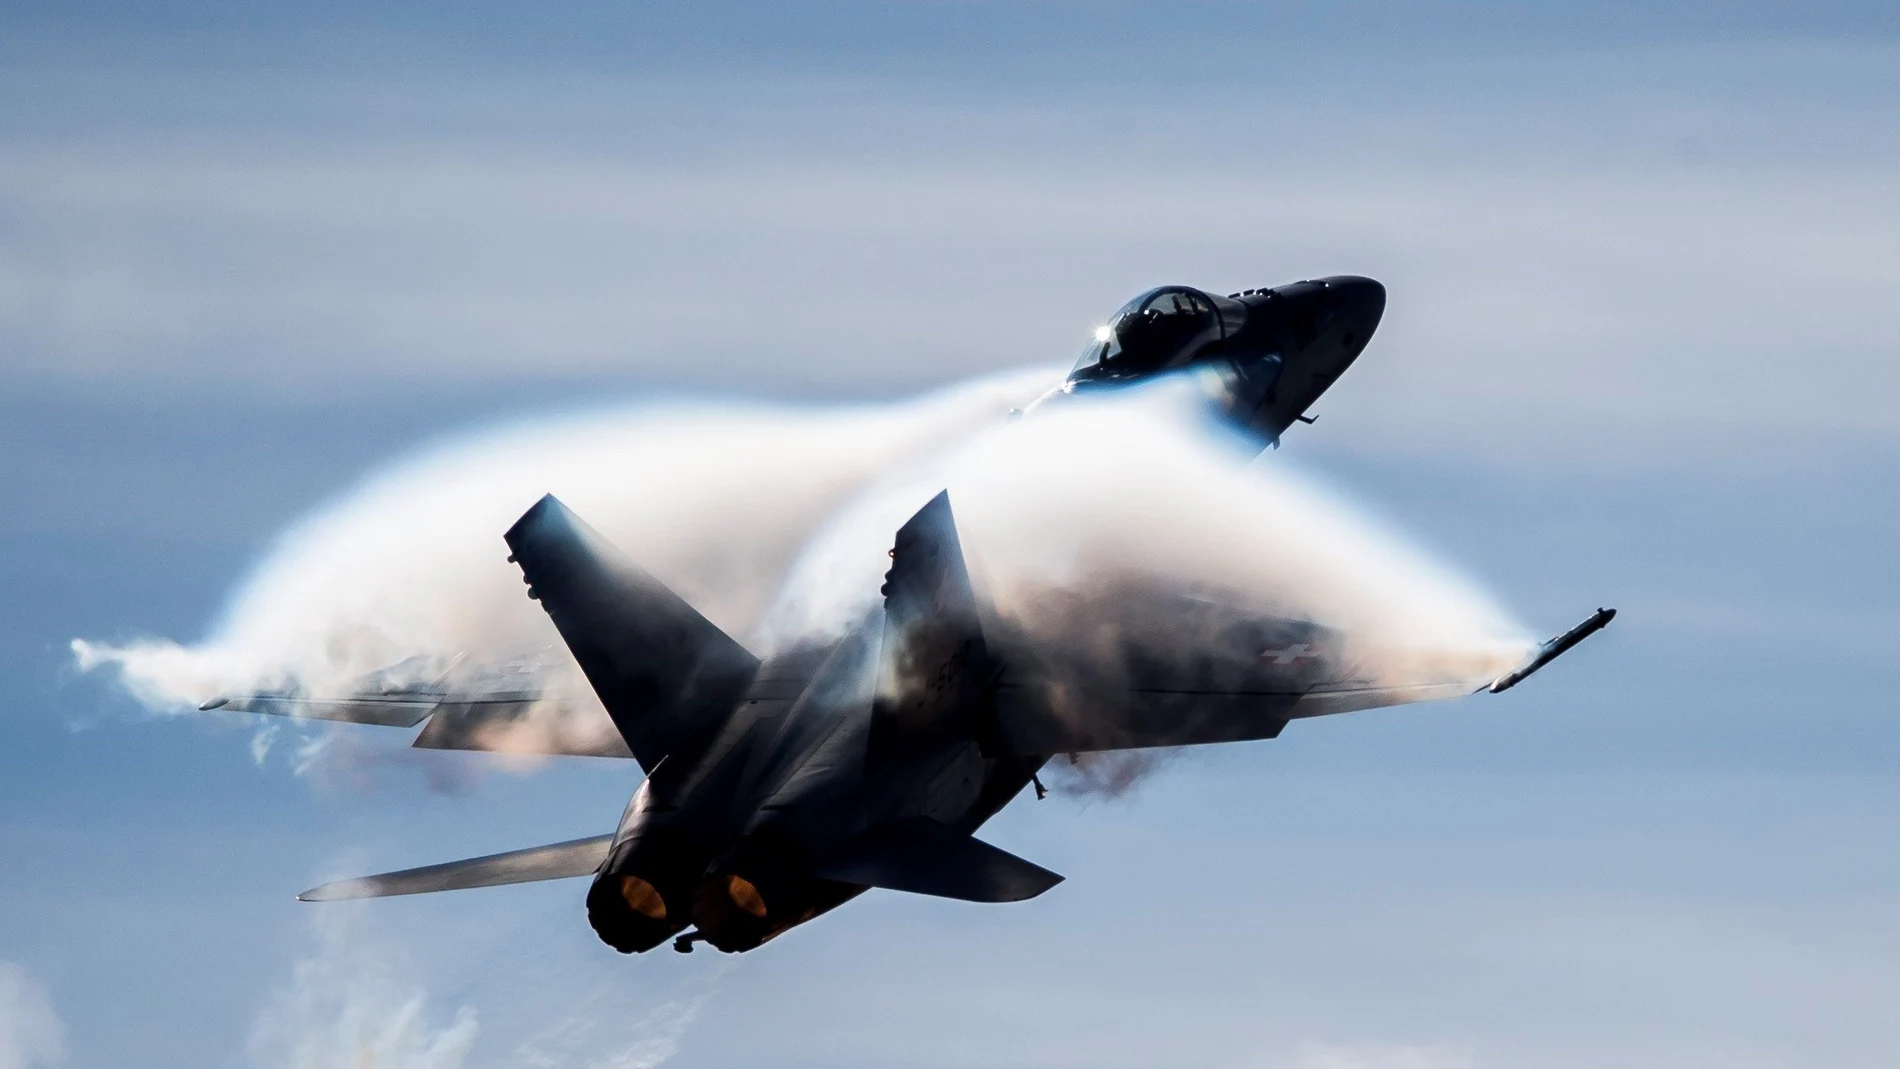 Velocidad extrema! Fotógrafo capta el momento en que un Jet rompe barrera  del sonido